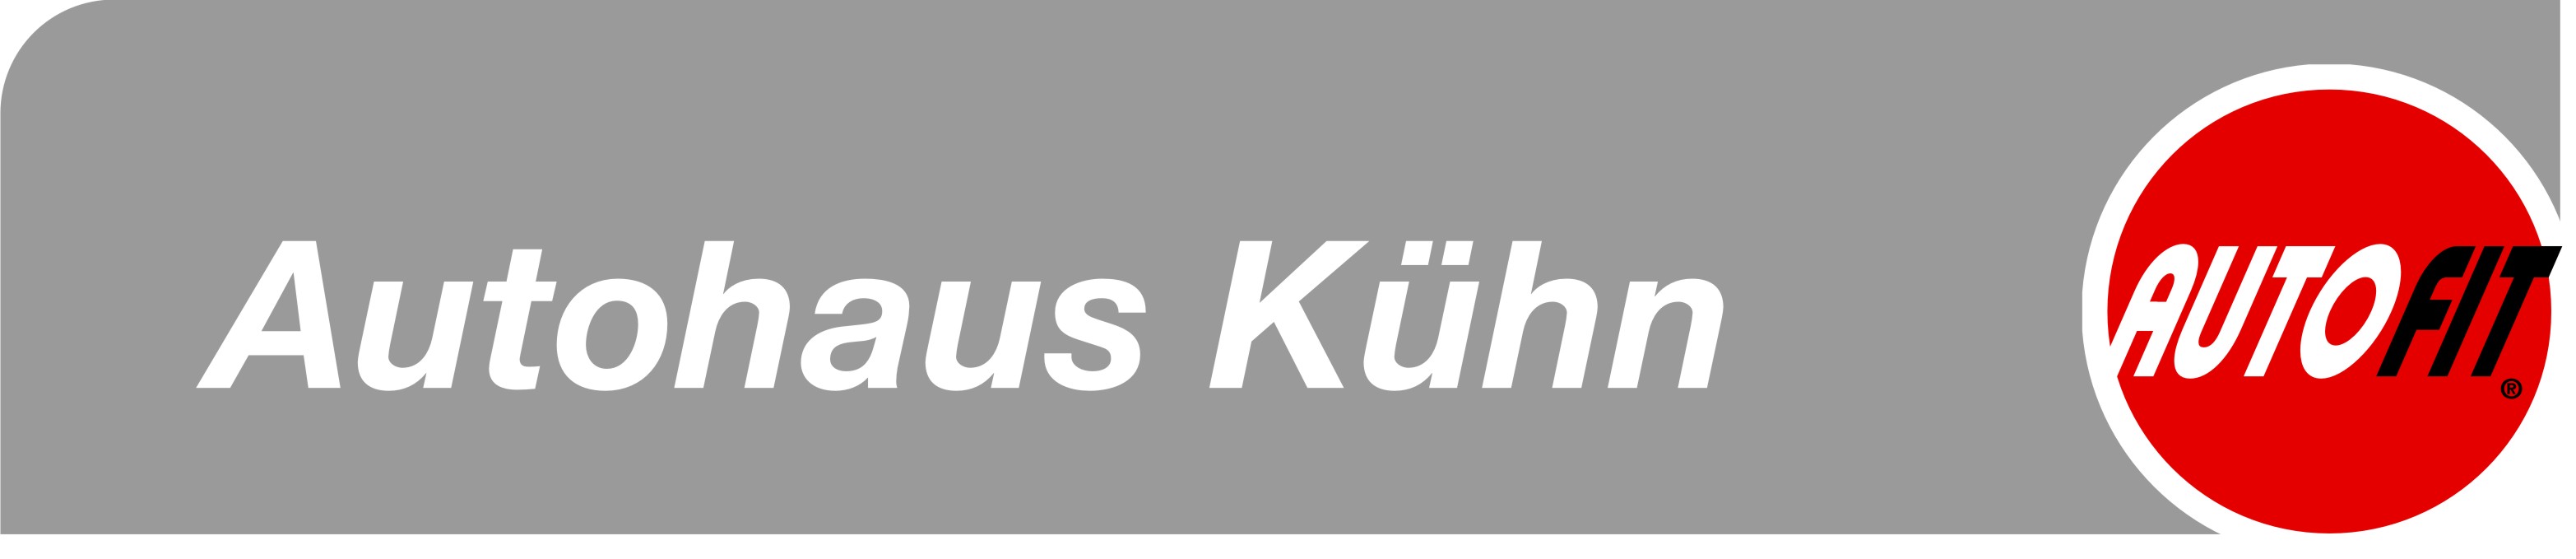 khn logo ab 07-2012